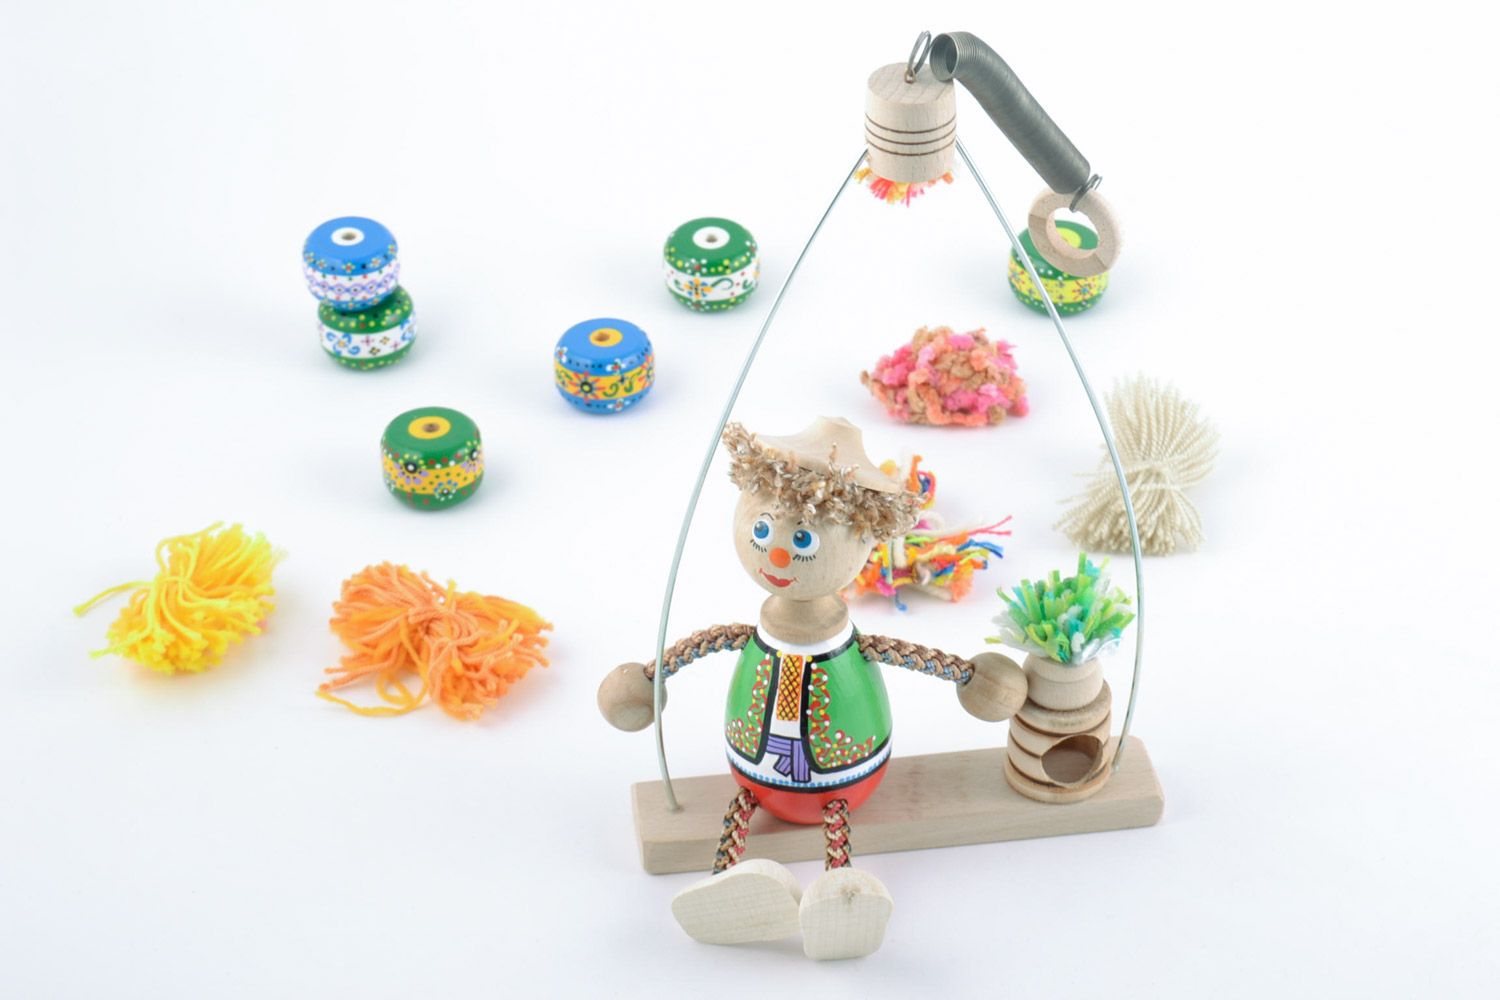 Öko Spielzeug aus Holz Junge auf Schaukel im ukrainischen Kostüm Handarbeit   foto 1